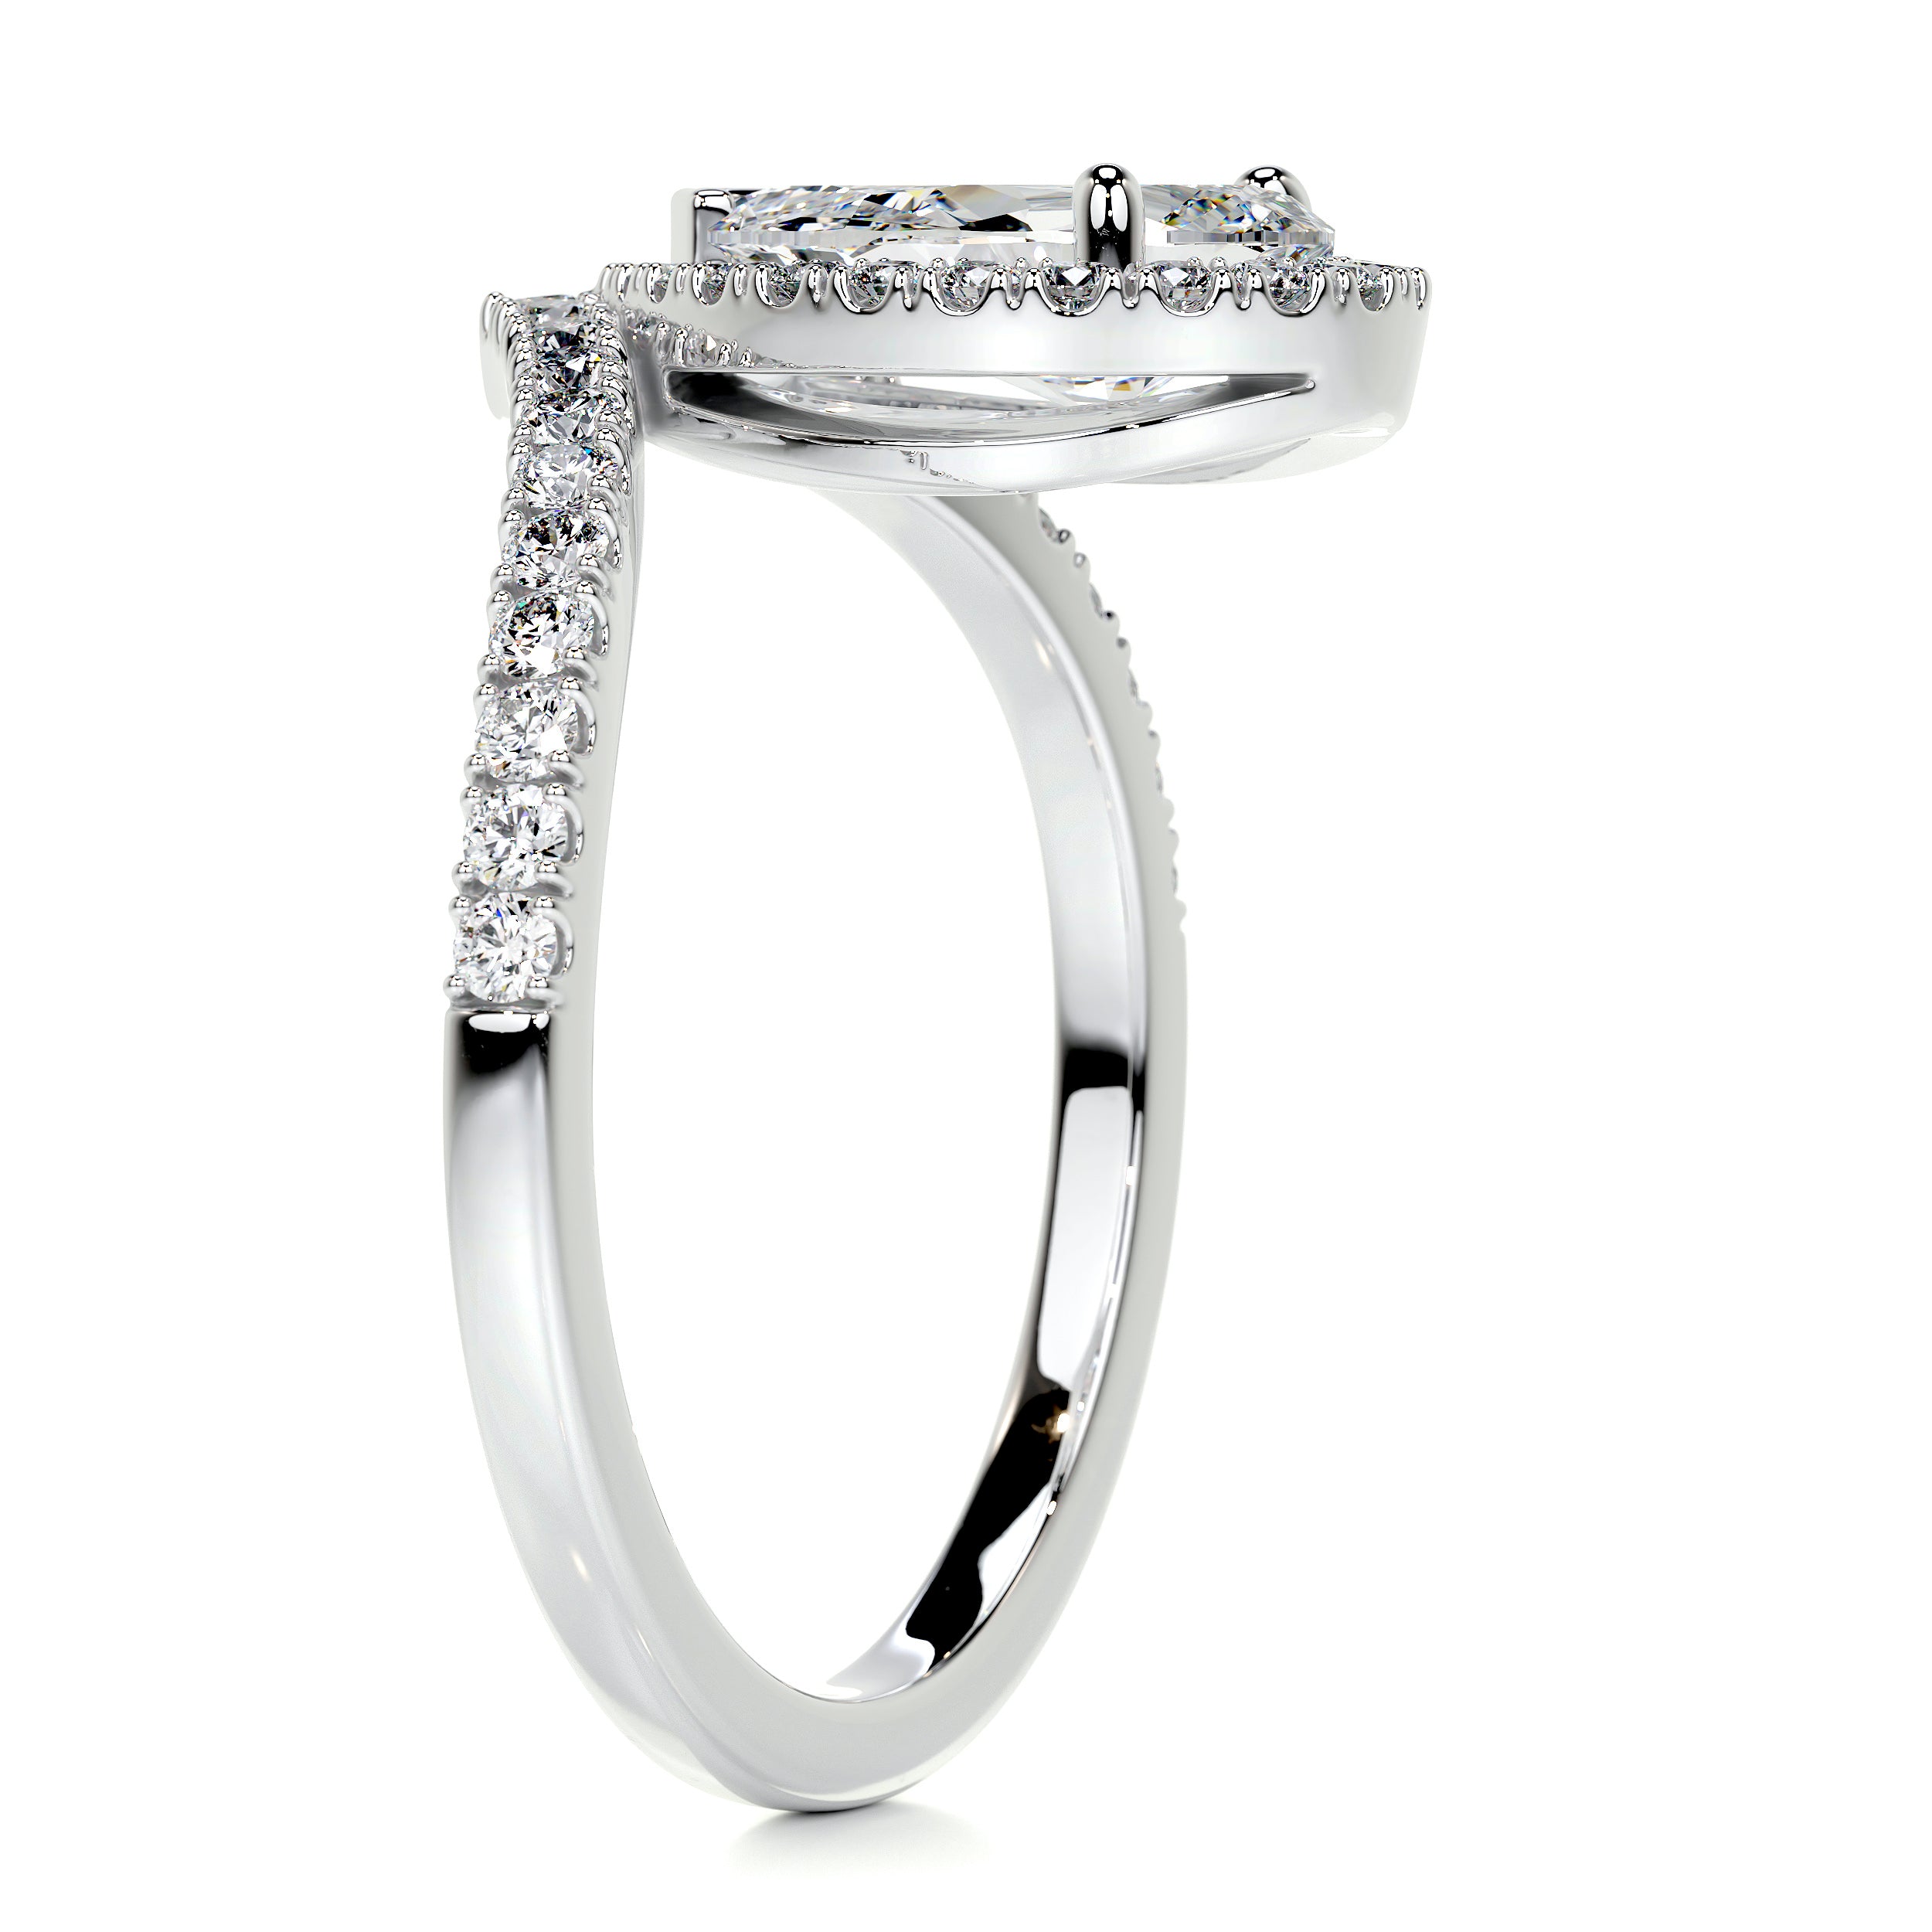 Miranda Diamond Engagement Ring   (1.55 Carat) -14K White Gold